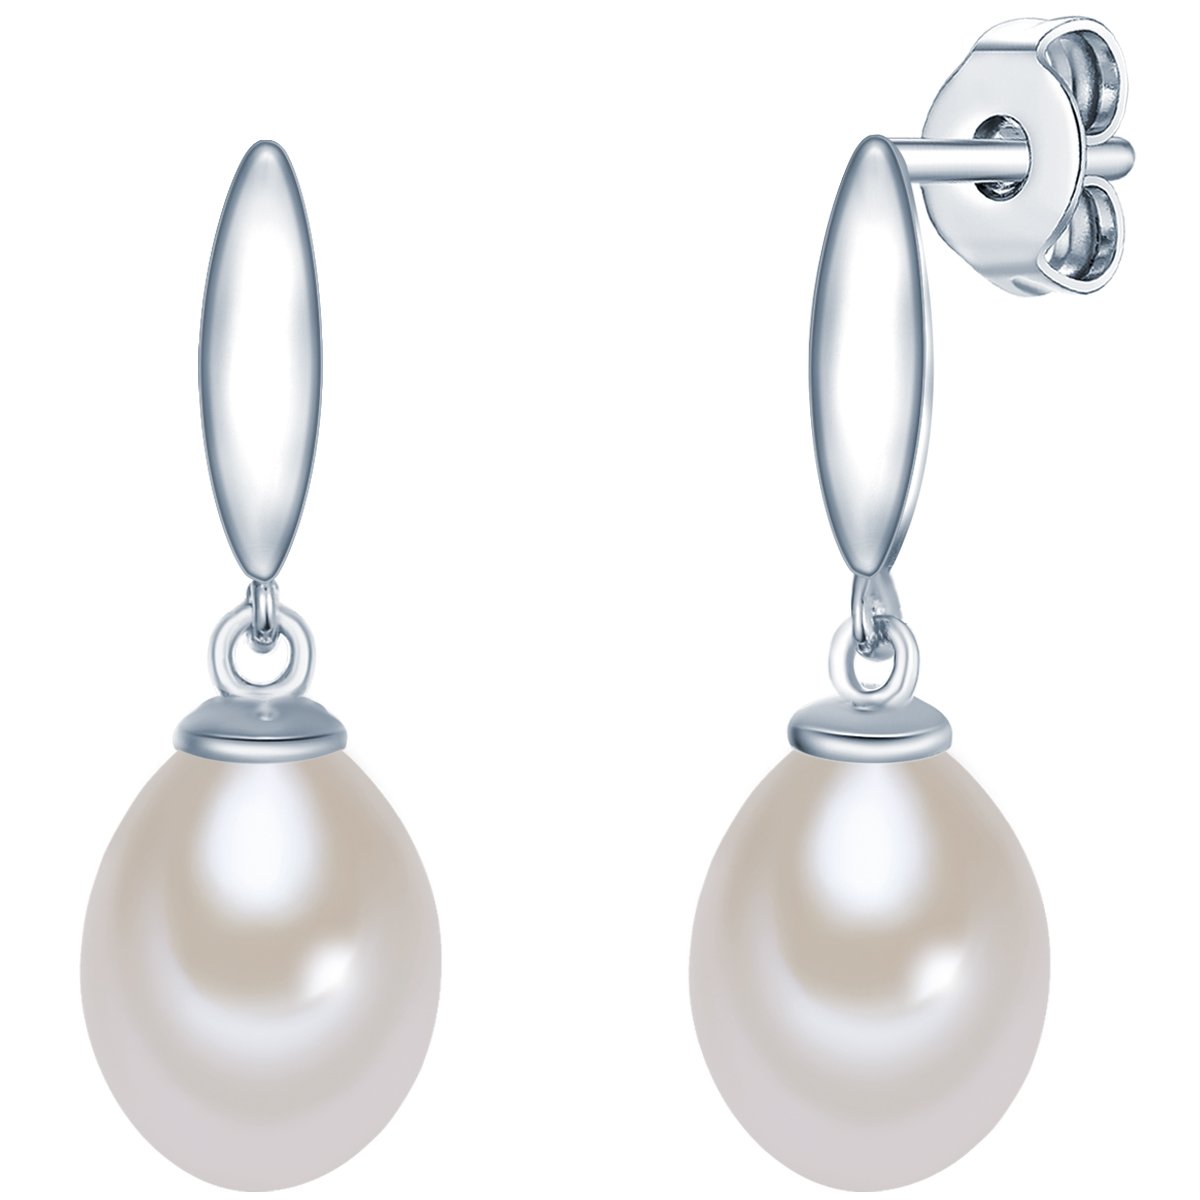 Valero Pearls Damen-Ohrstecker Hochwertige Süßwasser-Zuchtperlen 925 in ca. 8 mm Tropfenform weiß 925 Sterling-Silber - Perlenohrhänger mit echten Perlen weiss 356010